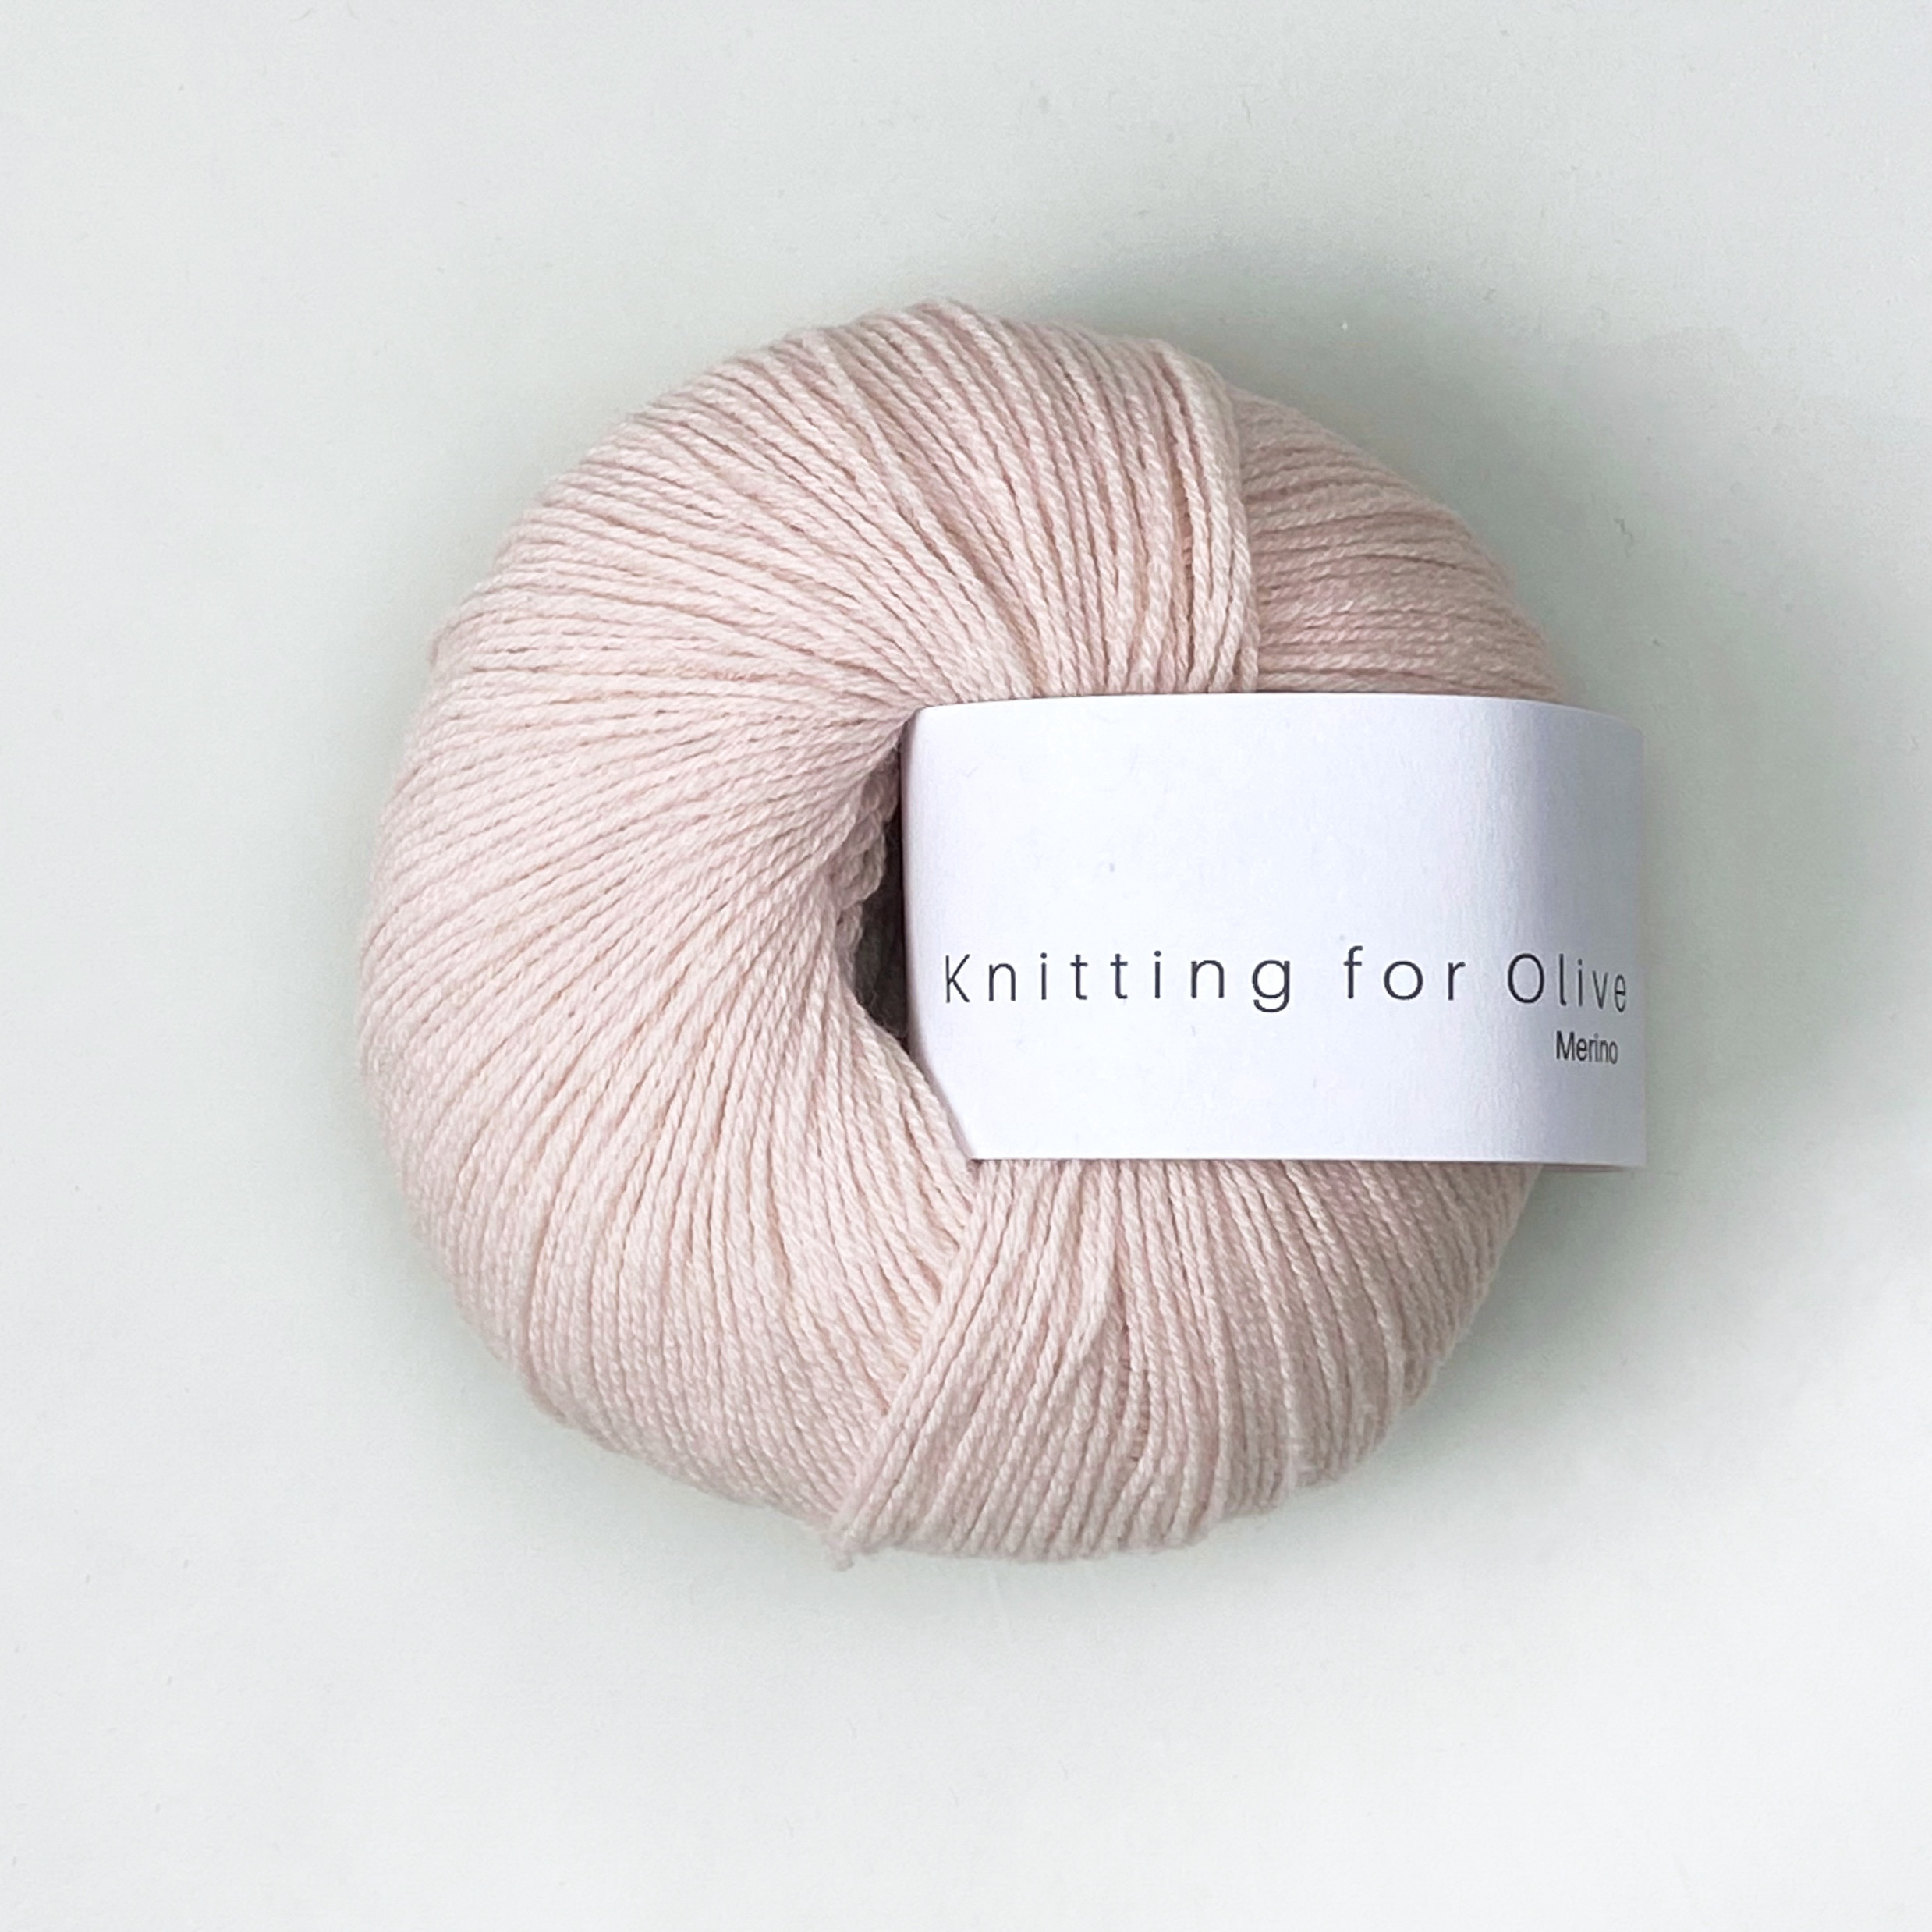 Merino (Knitting for Olive): ballerina